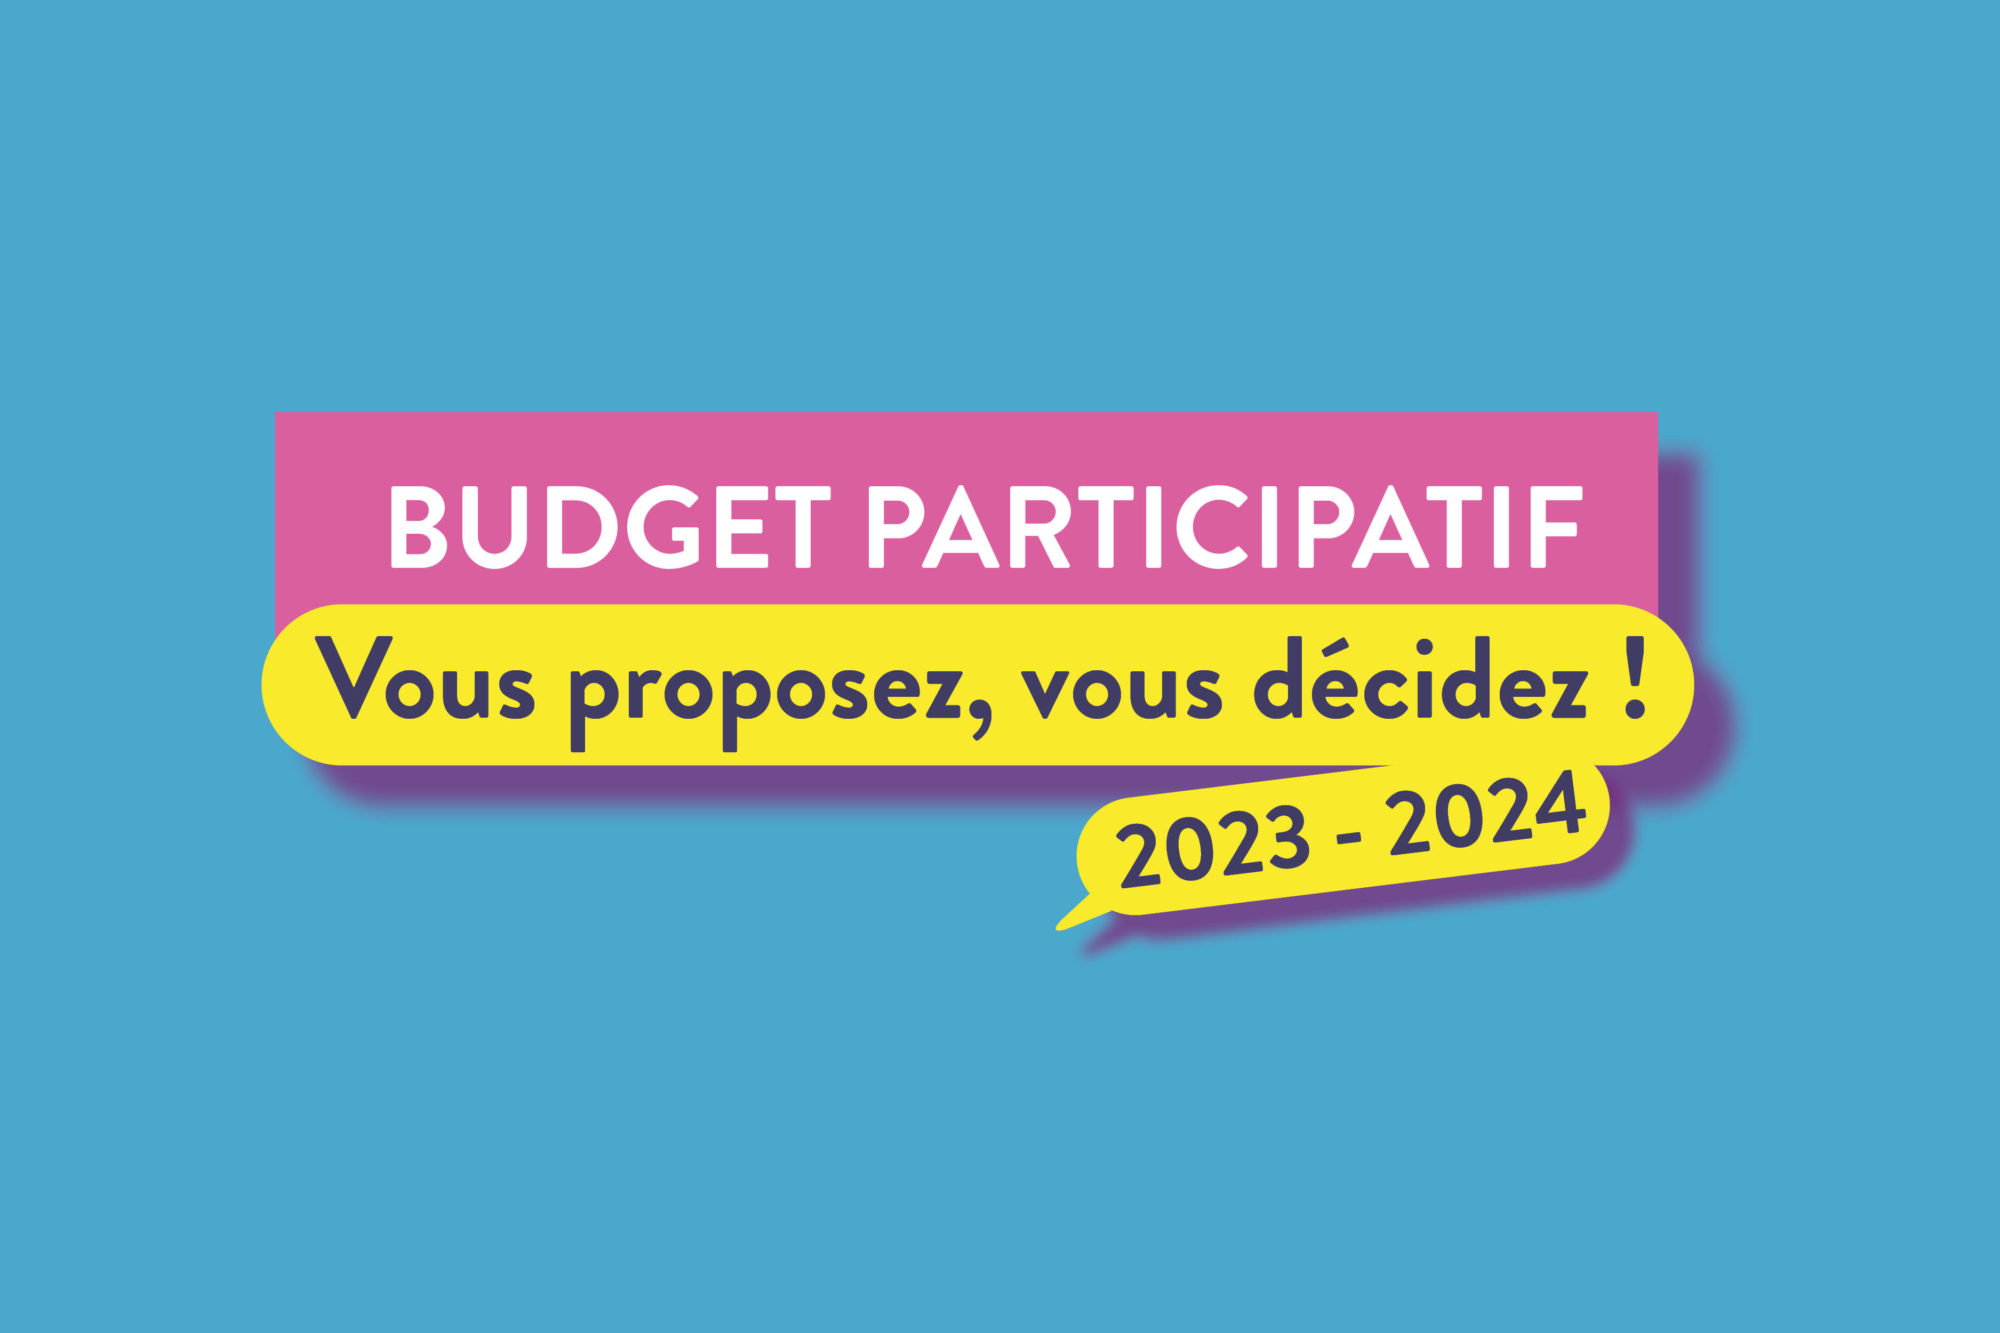 Budget participatif 2023 : c’est parti !